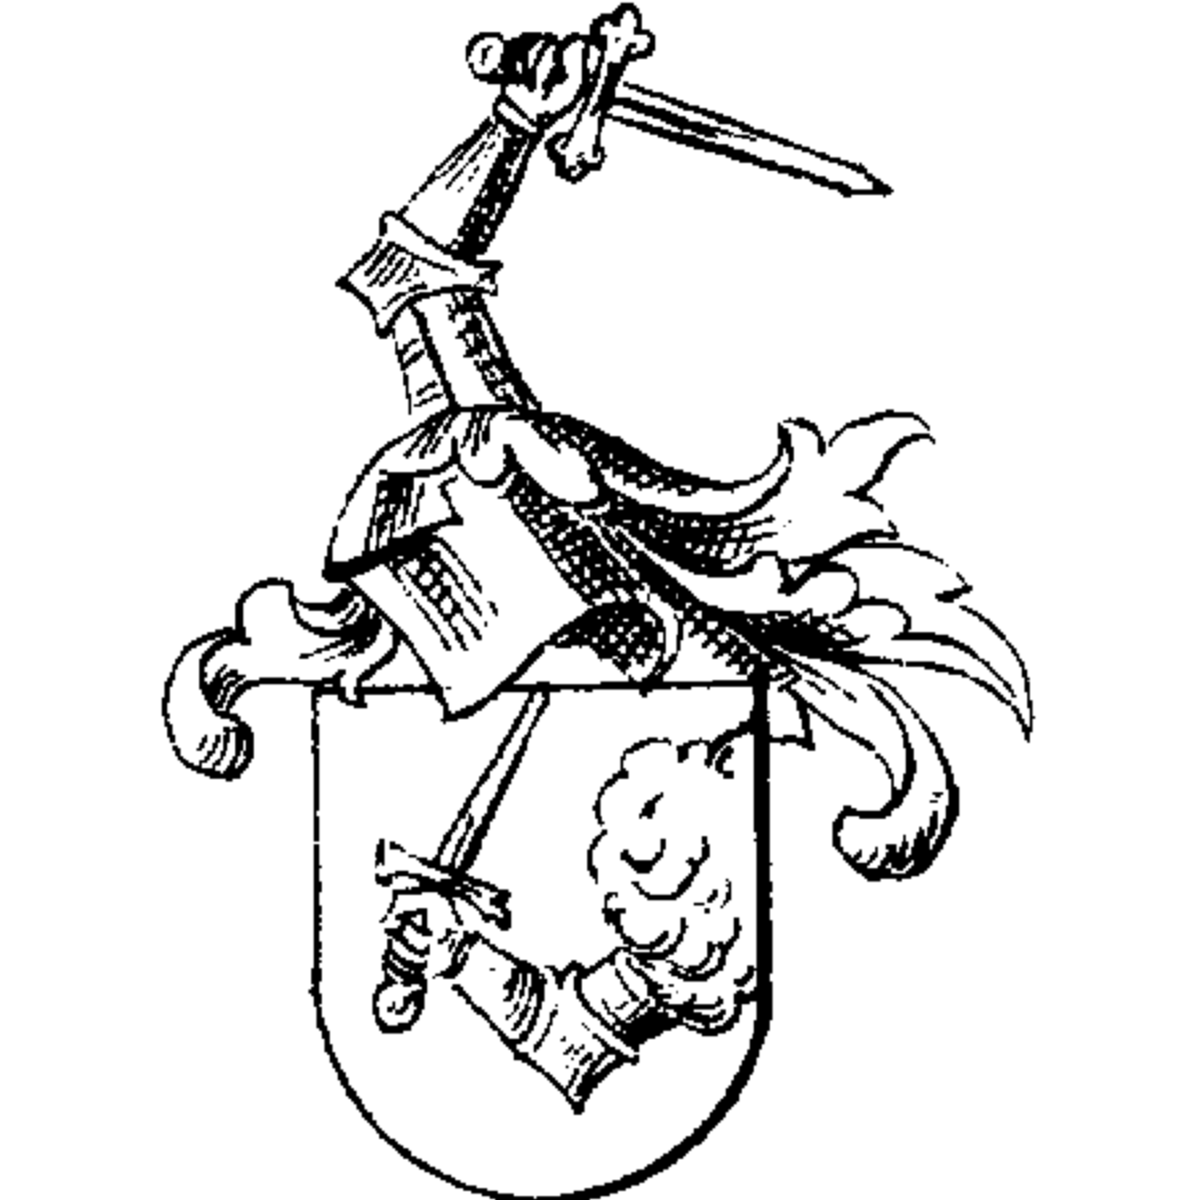 Brasão da família Roßbühel